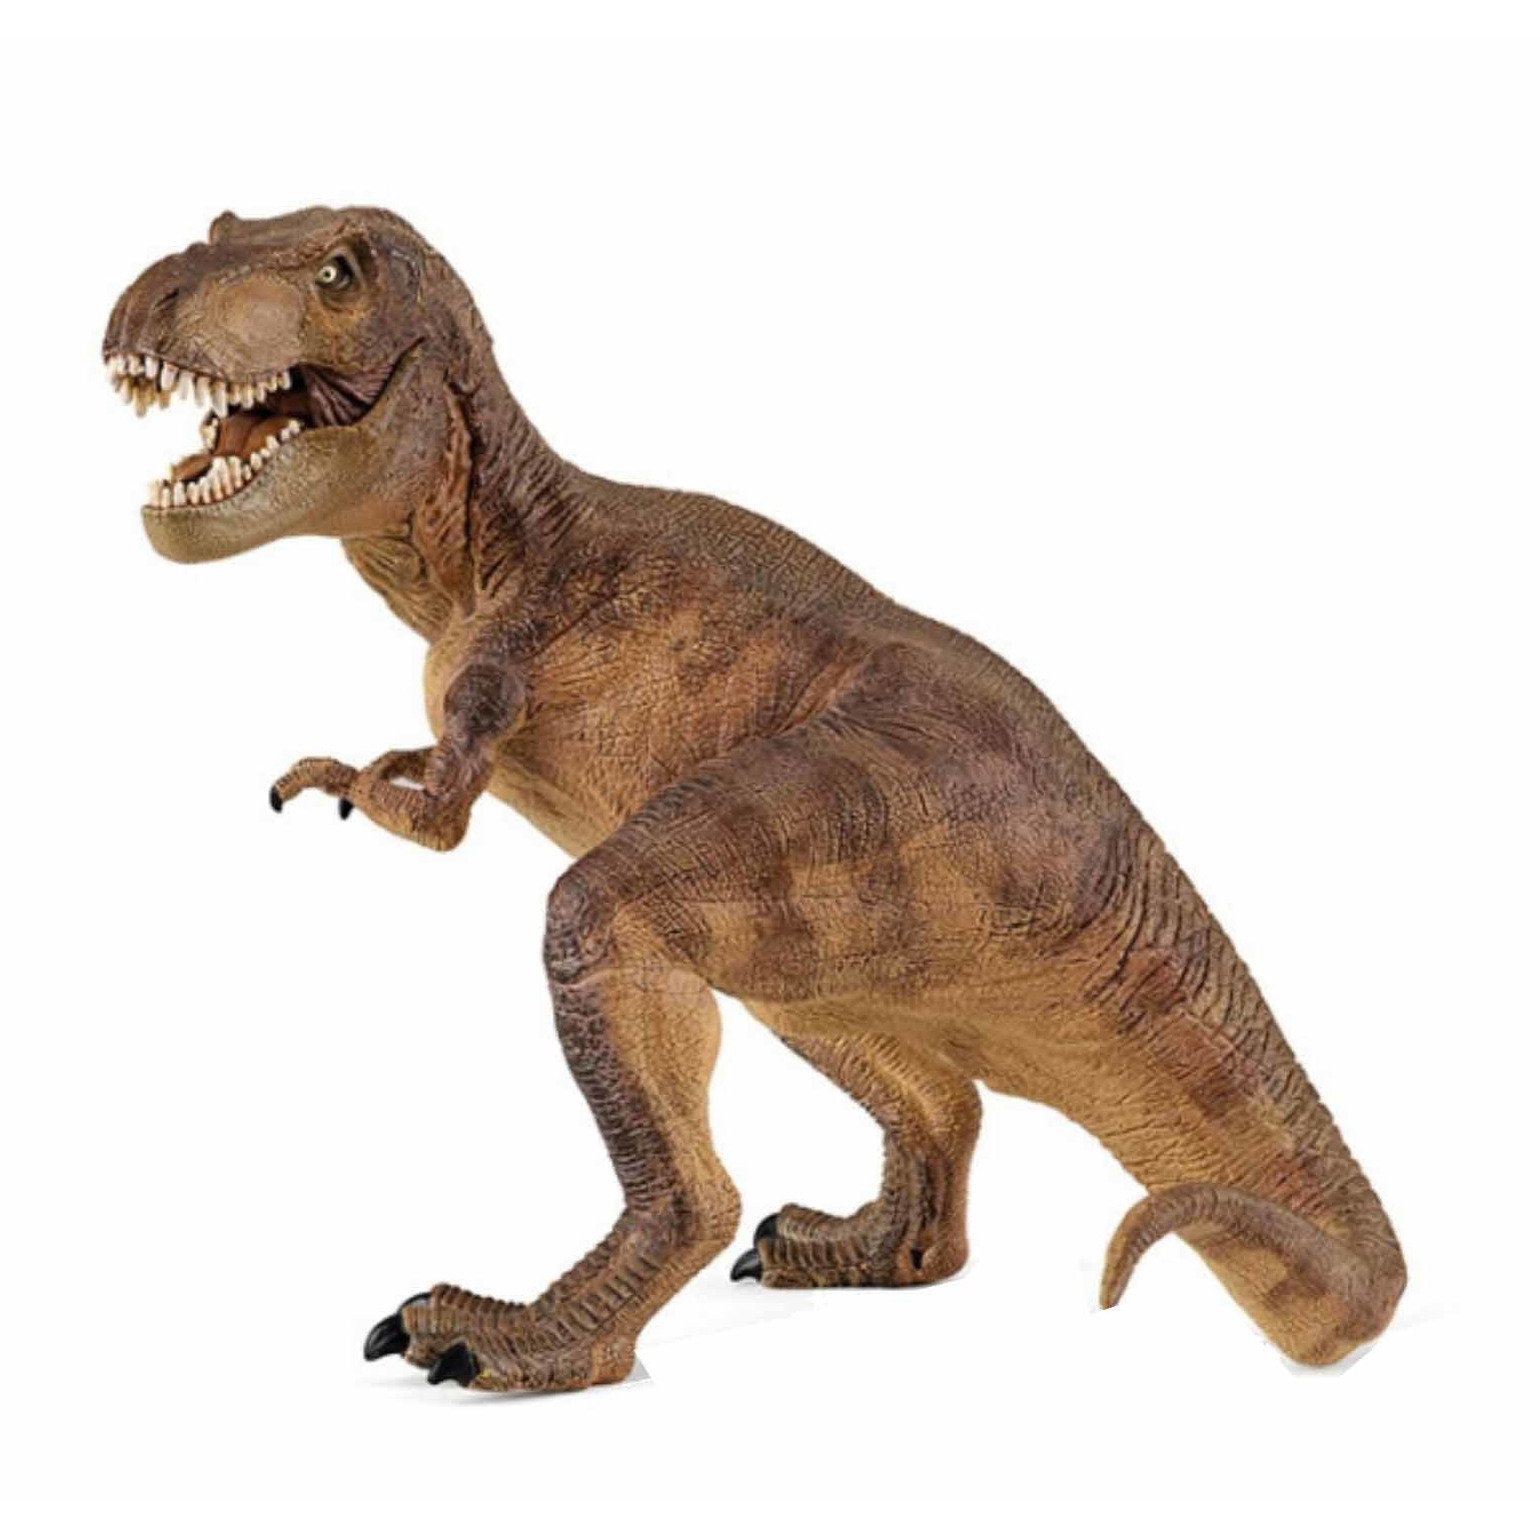 Plastic speelgoed figuur t-rex dinosaurus 17 cm